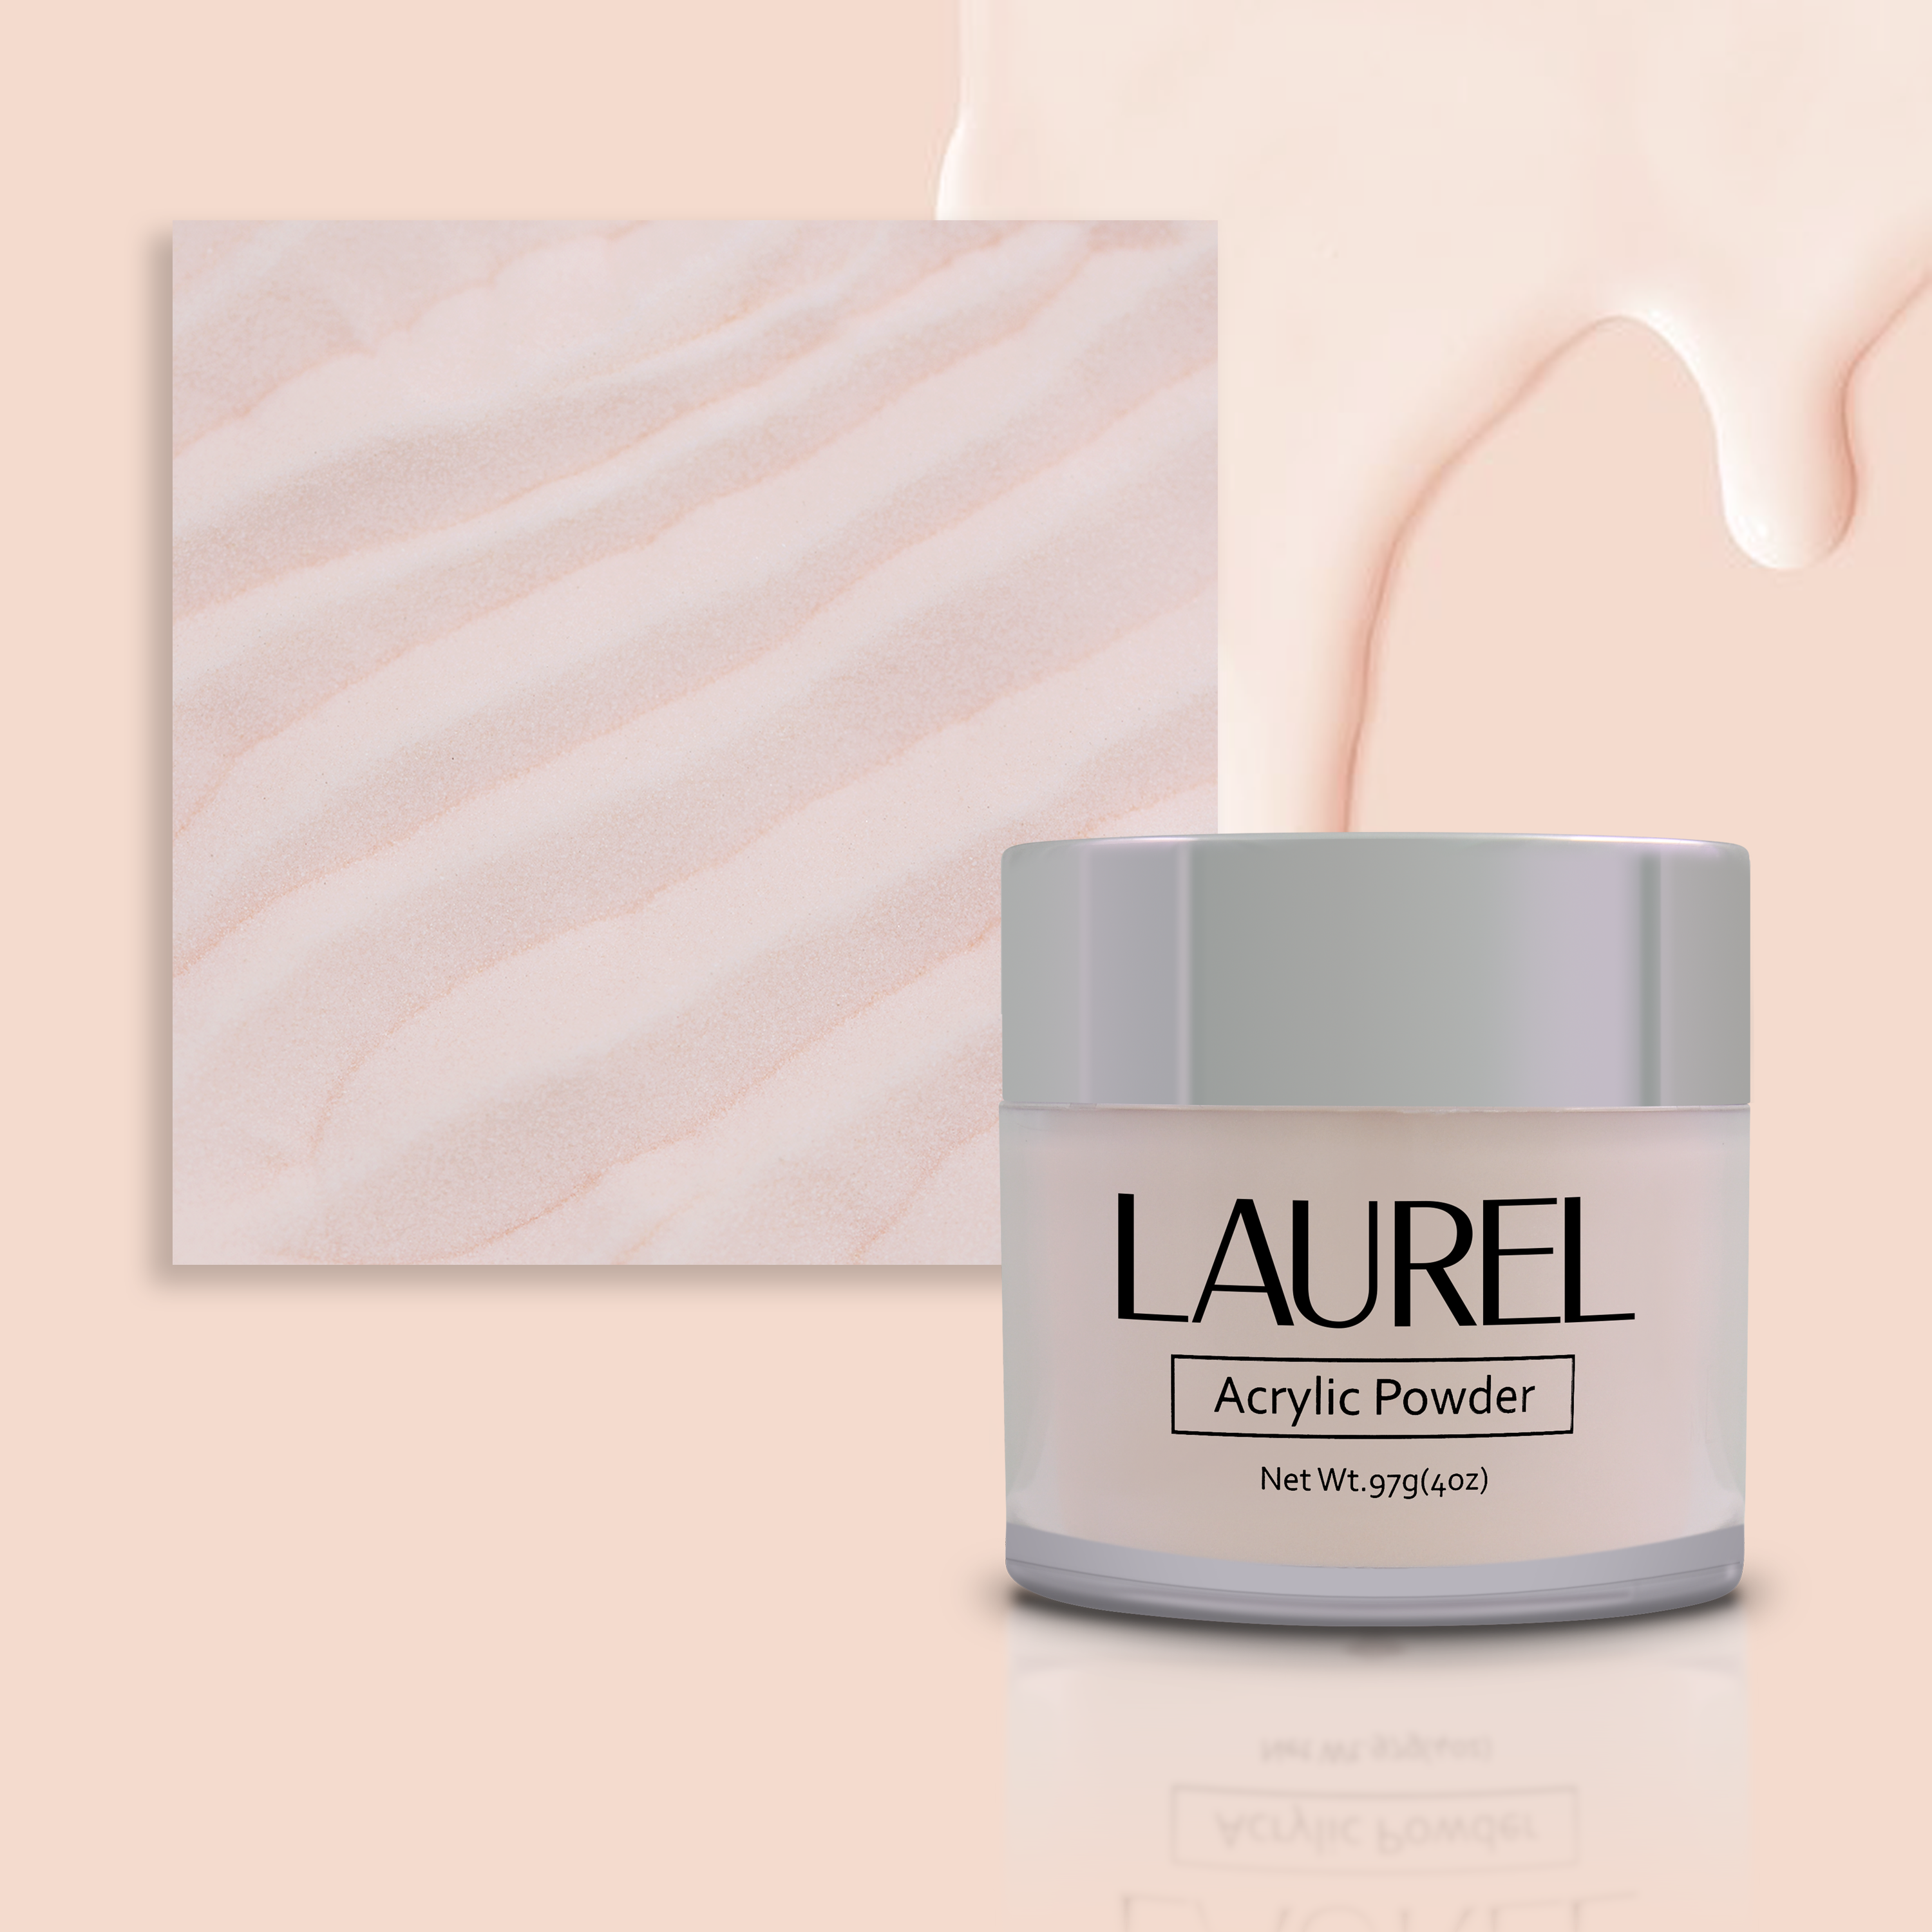 Laurel Acrylic Powder